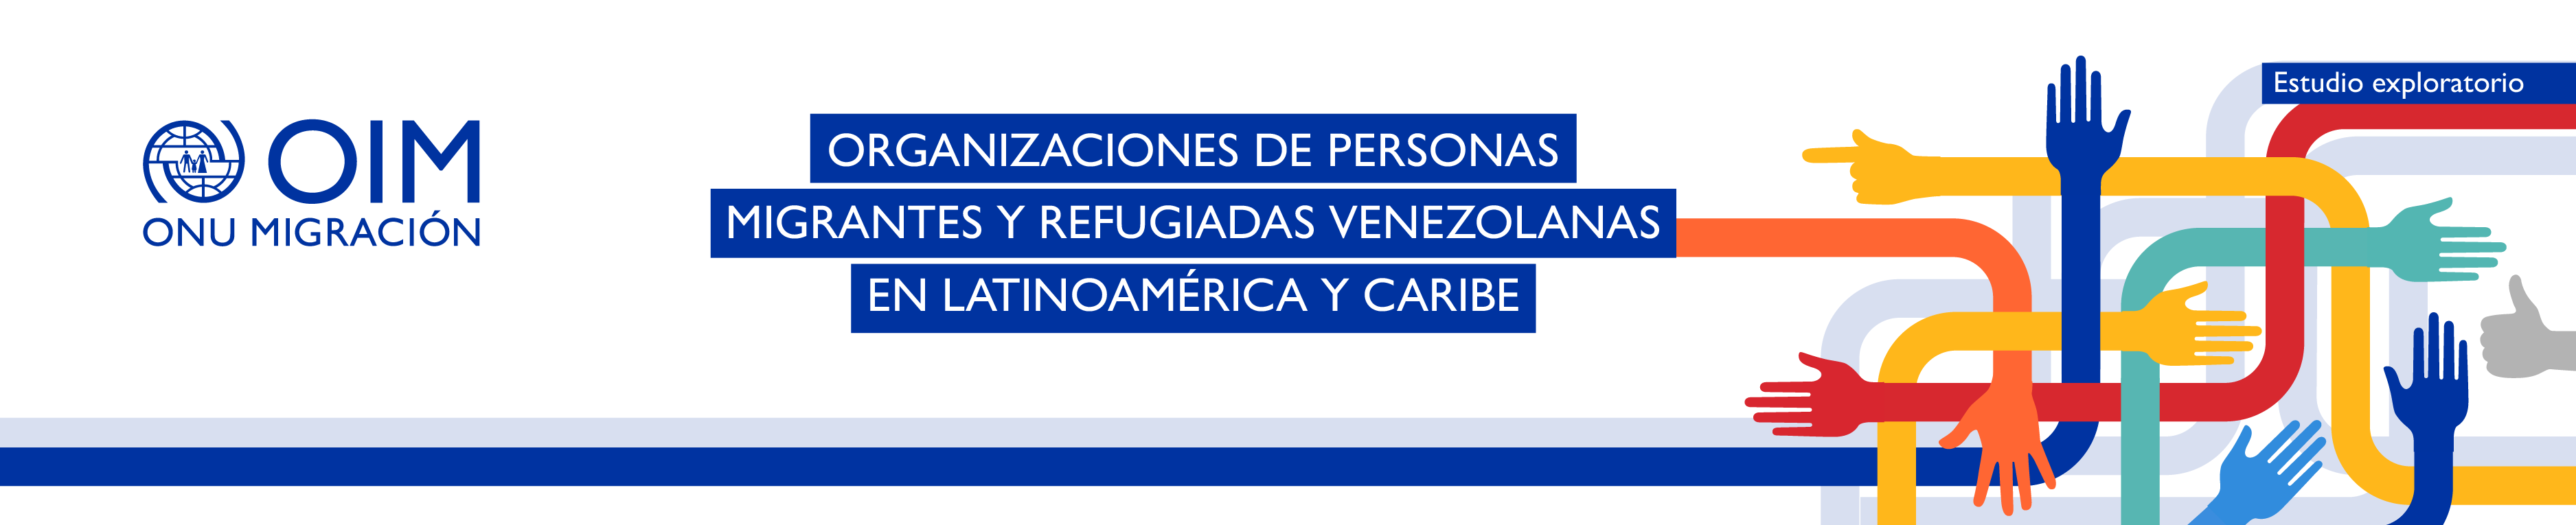 Organizaciones de personas migrantes y refugiadas venezolanas en Latinoamérica Y Caribe